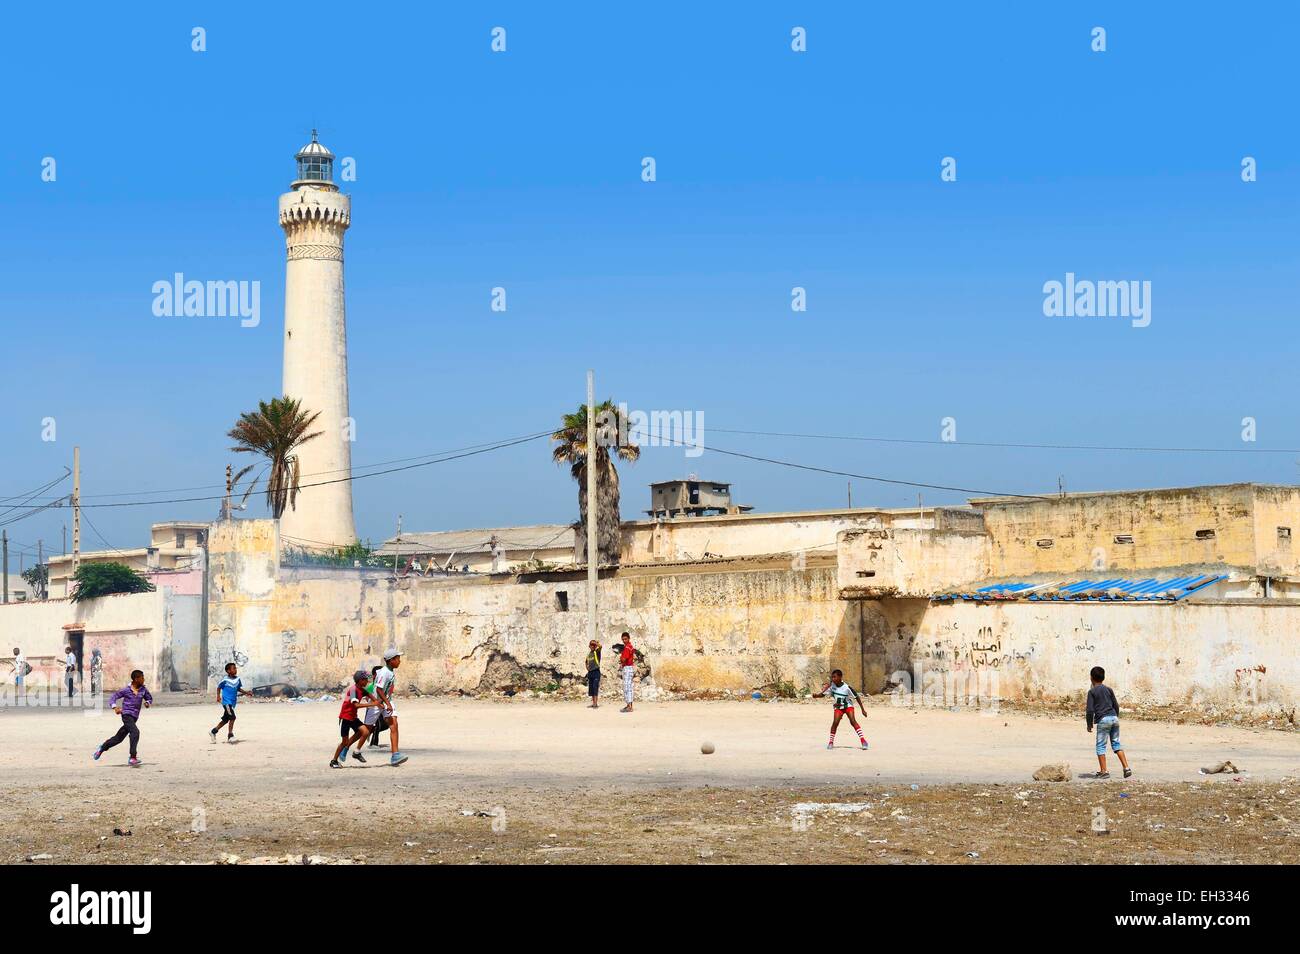 Maroc, Casablanca, les enfants jouant au football dans le quartier populaire d'El Hank lighthouse Banque D'Images